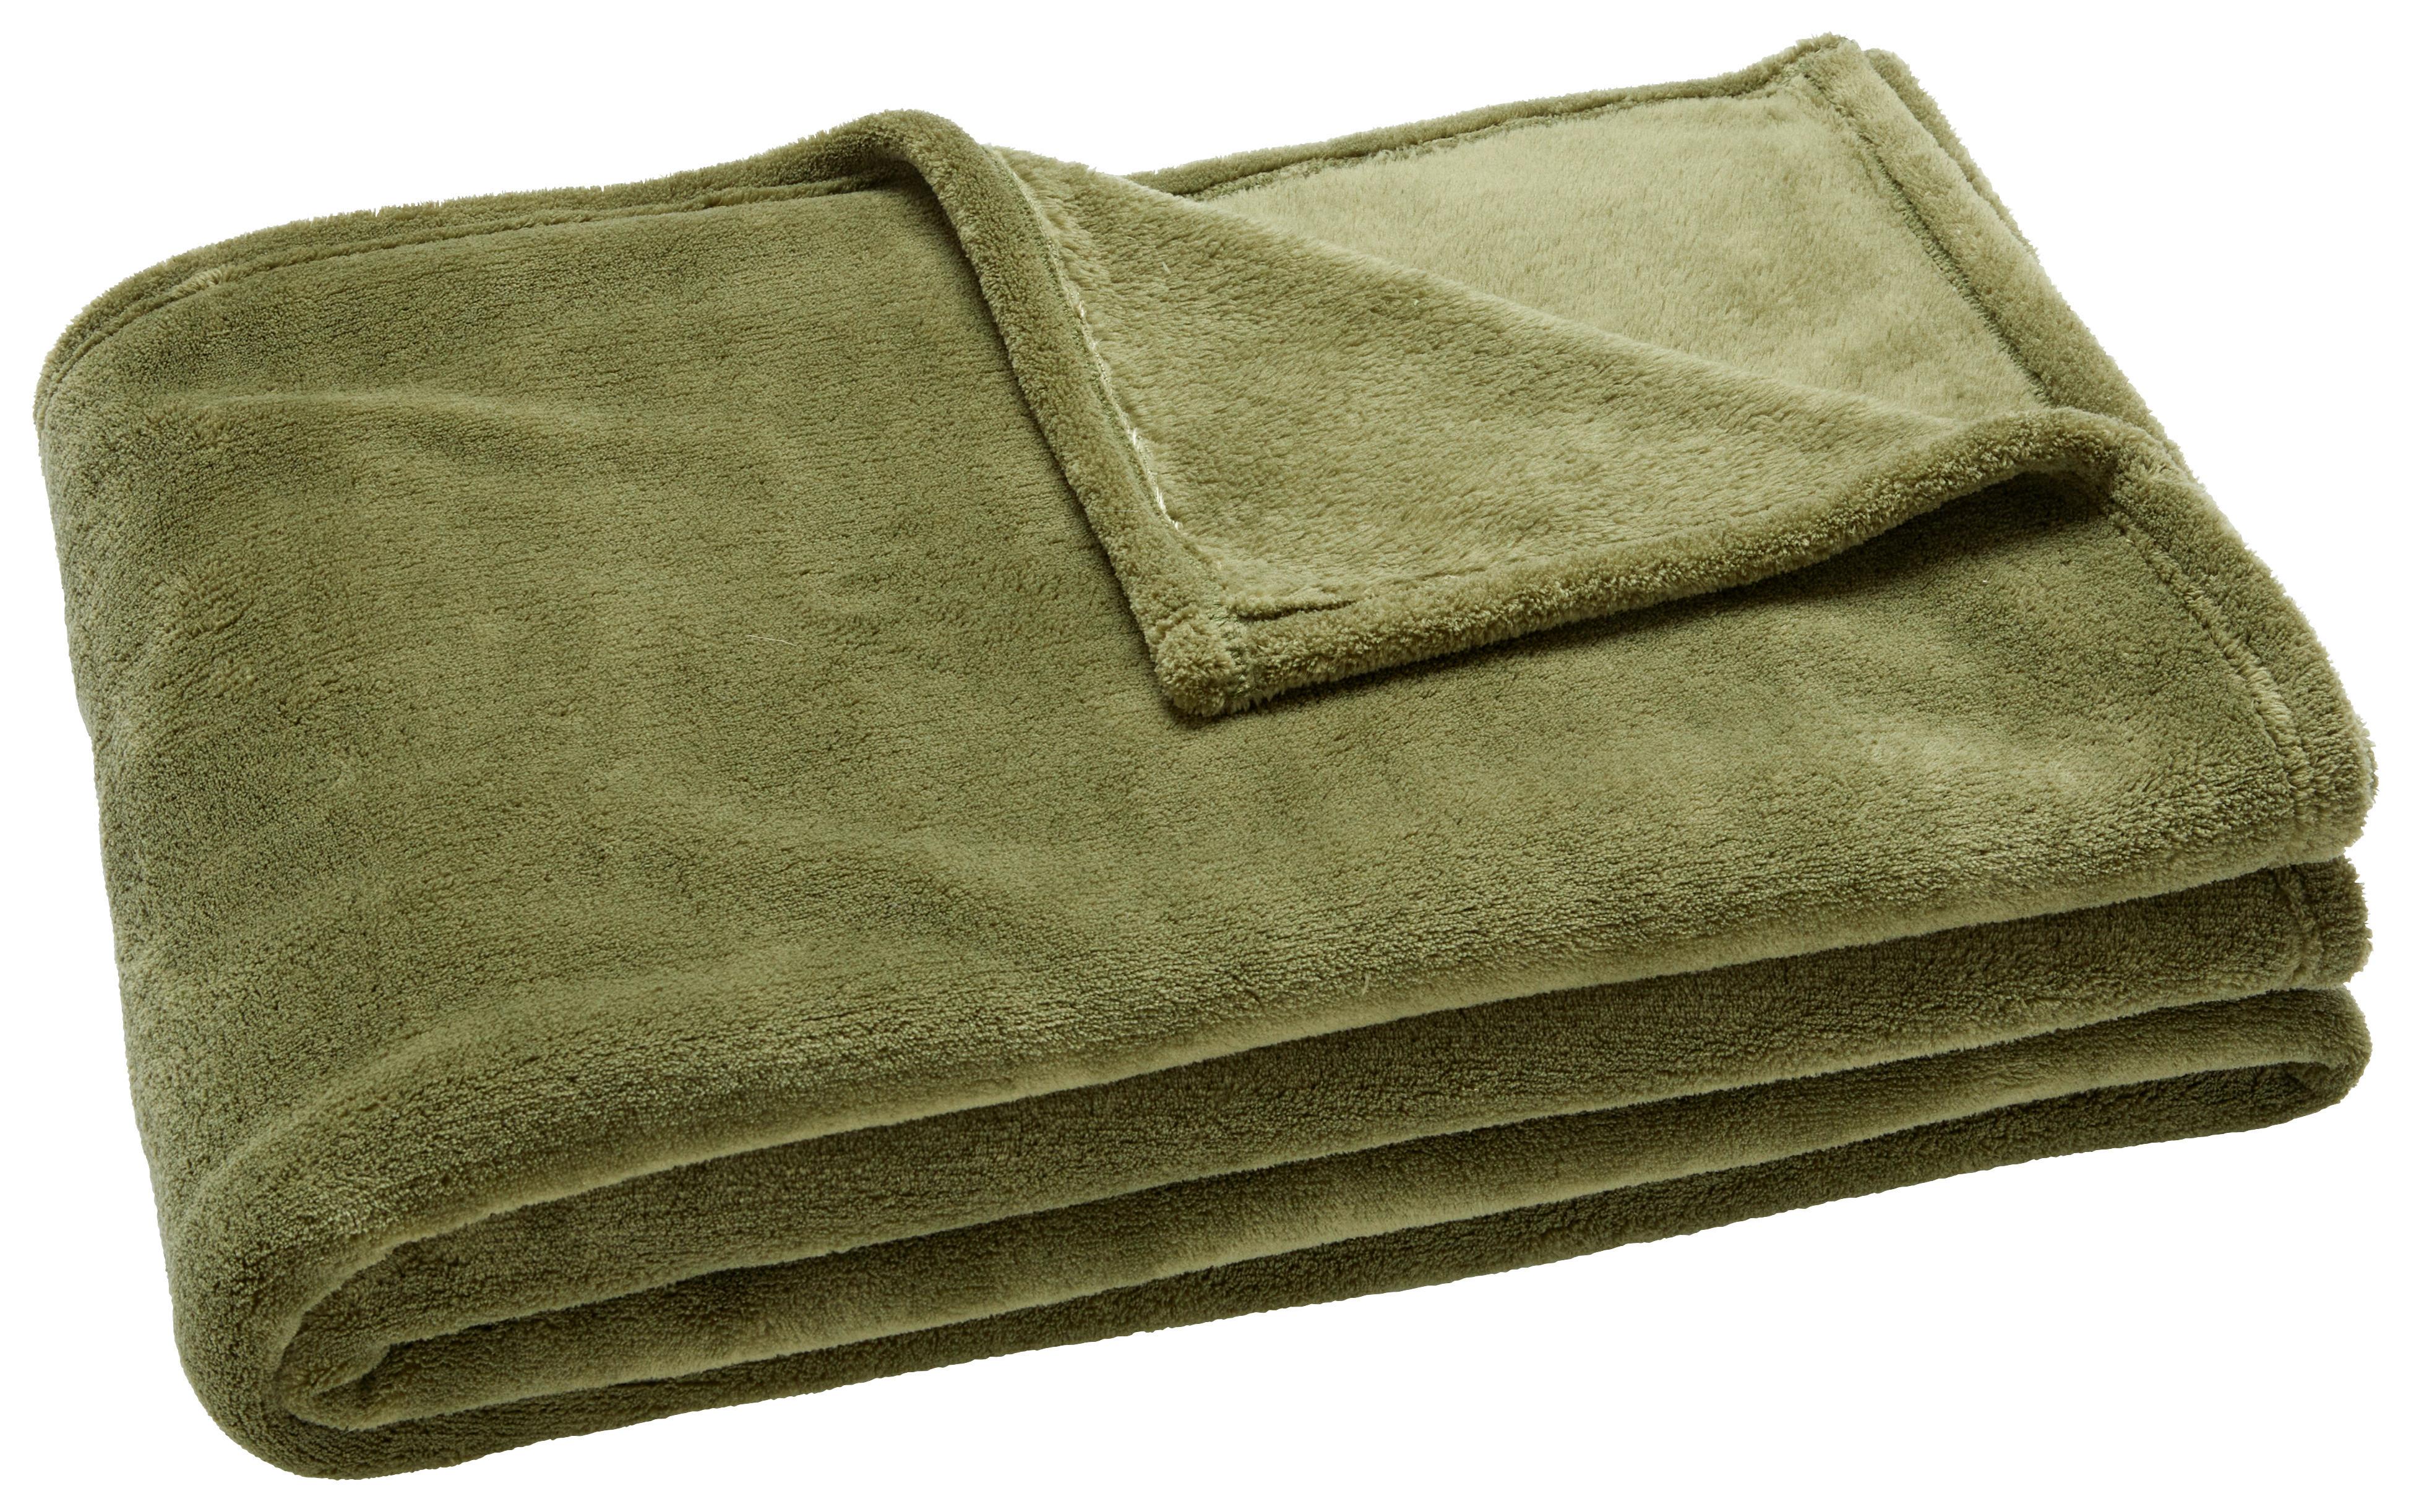 Měkká Deka Kuschelix, 140/200cm - olivově zelená, textil (140/200cm) - Modern Living